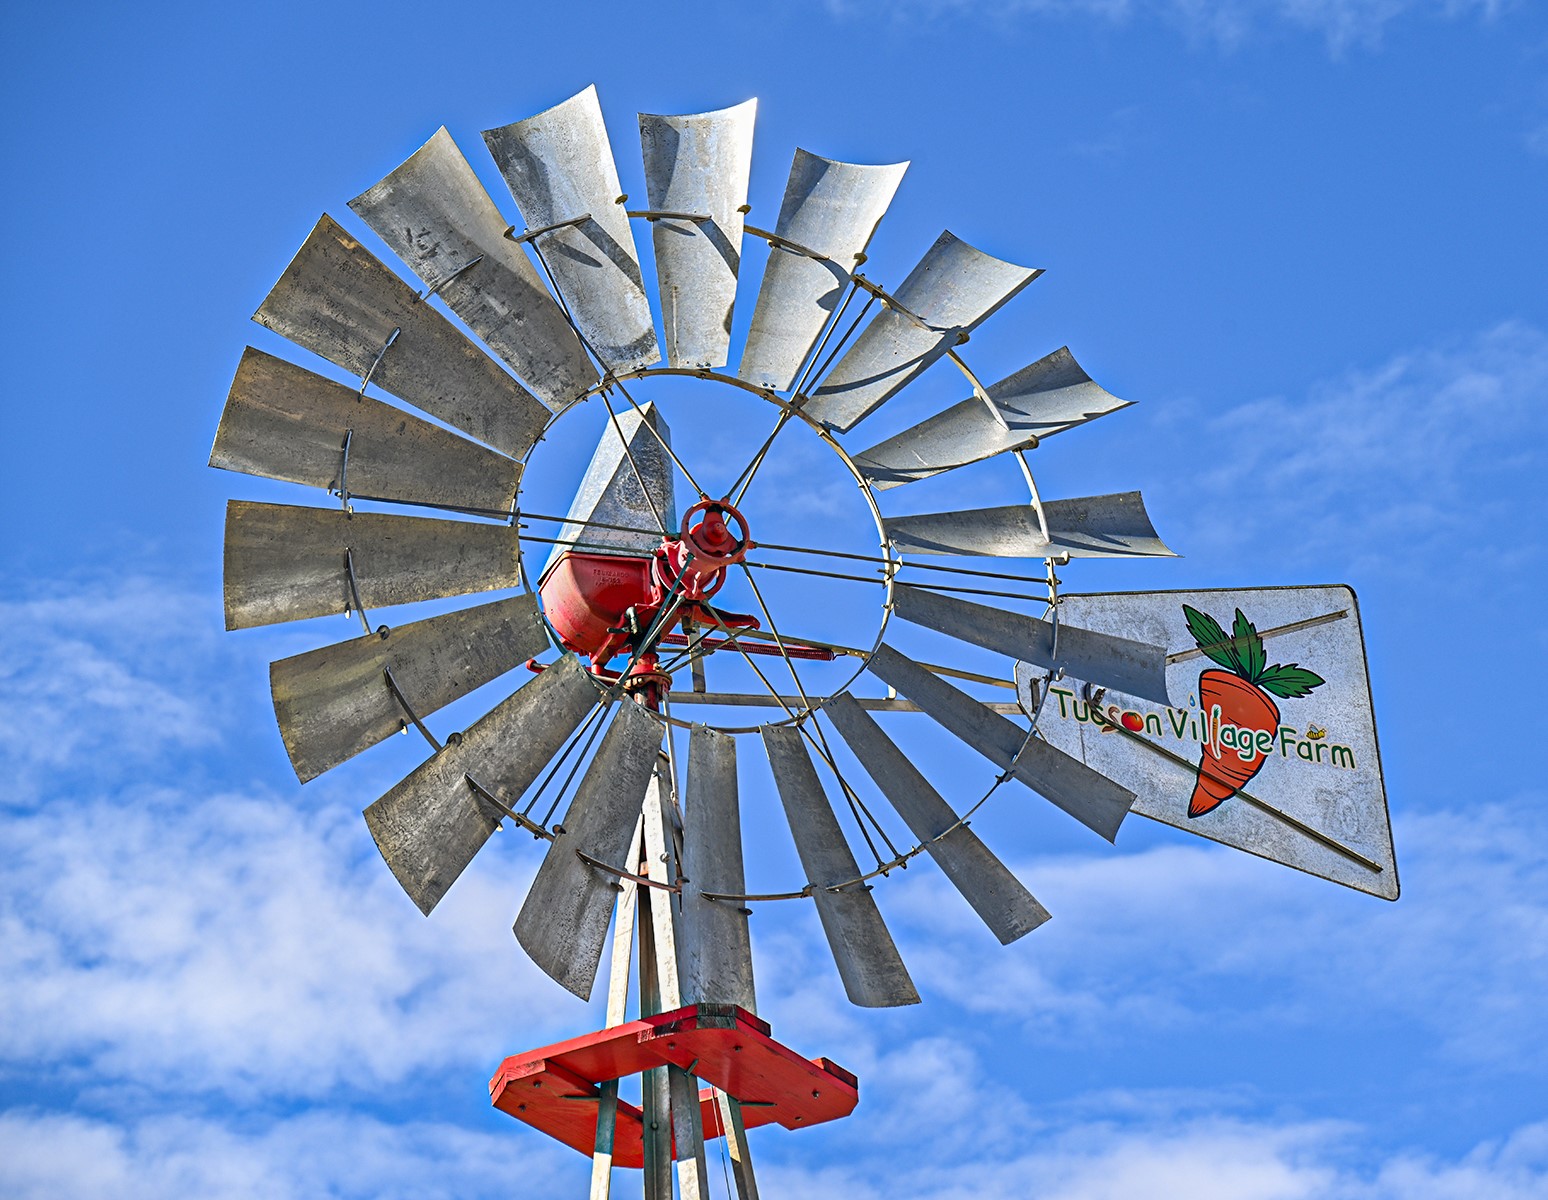 A closeup of a windmill at ߲о Village Farm.